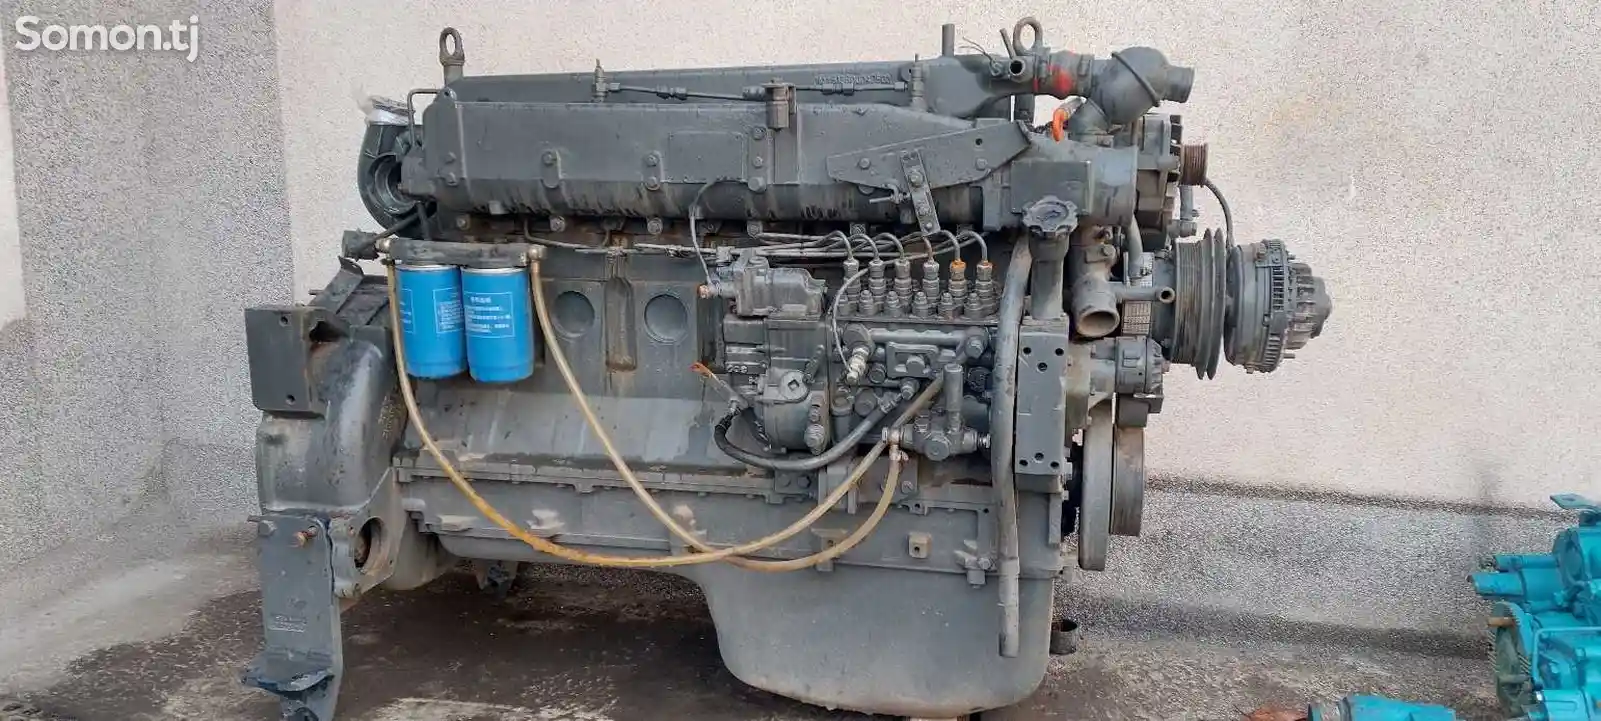 Мотор от Дулана-1